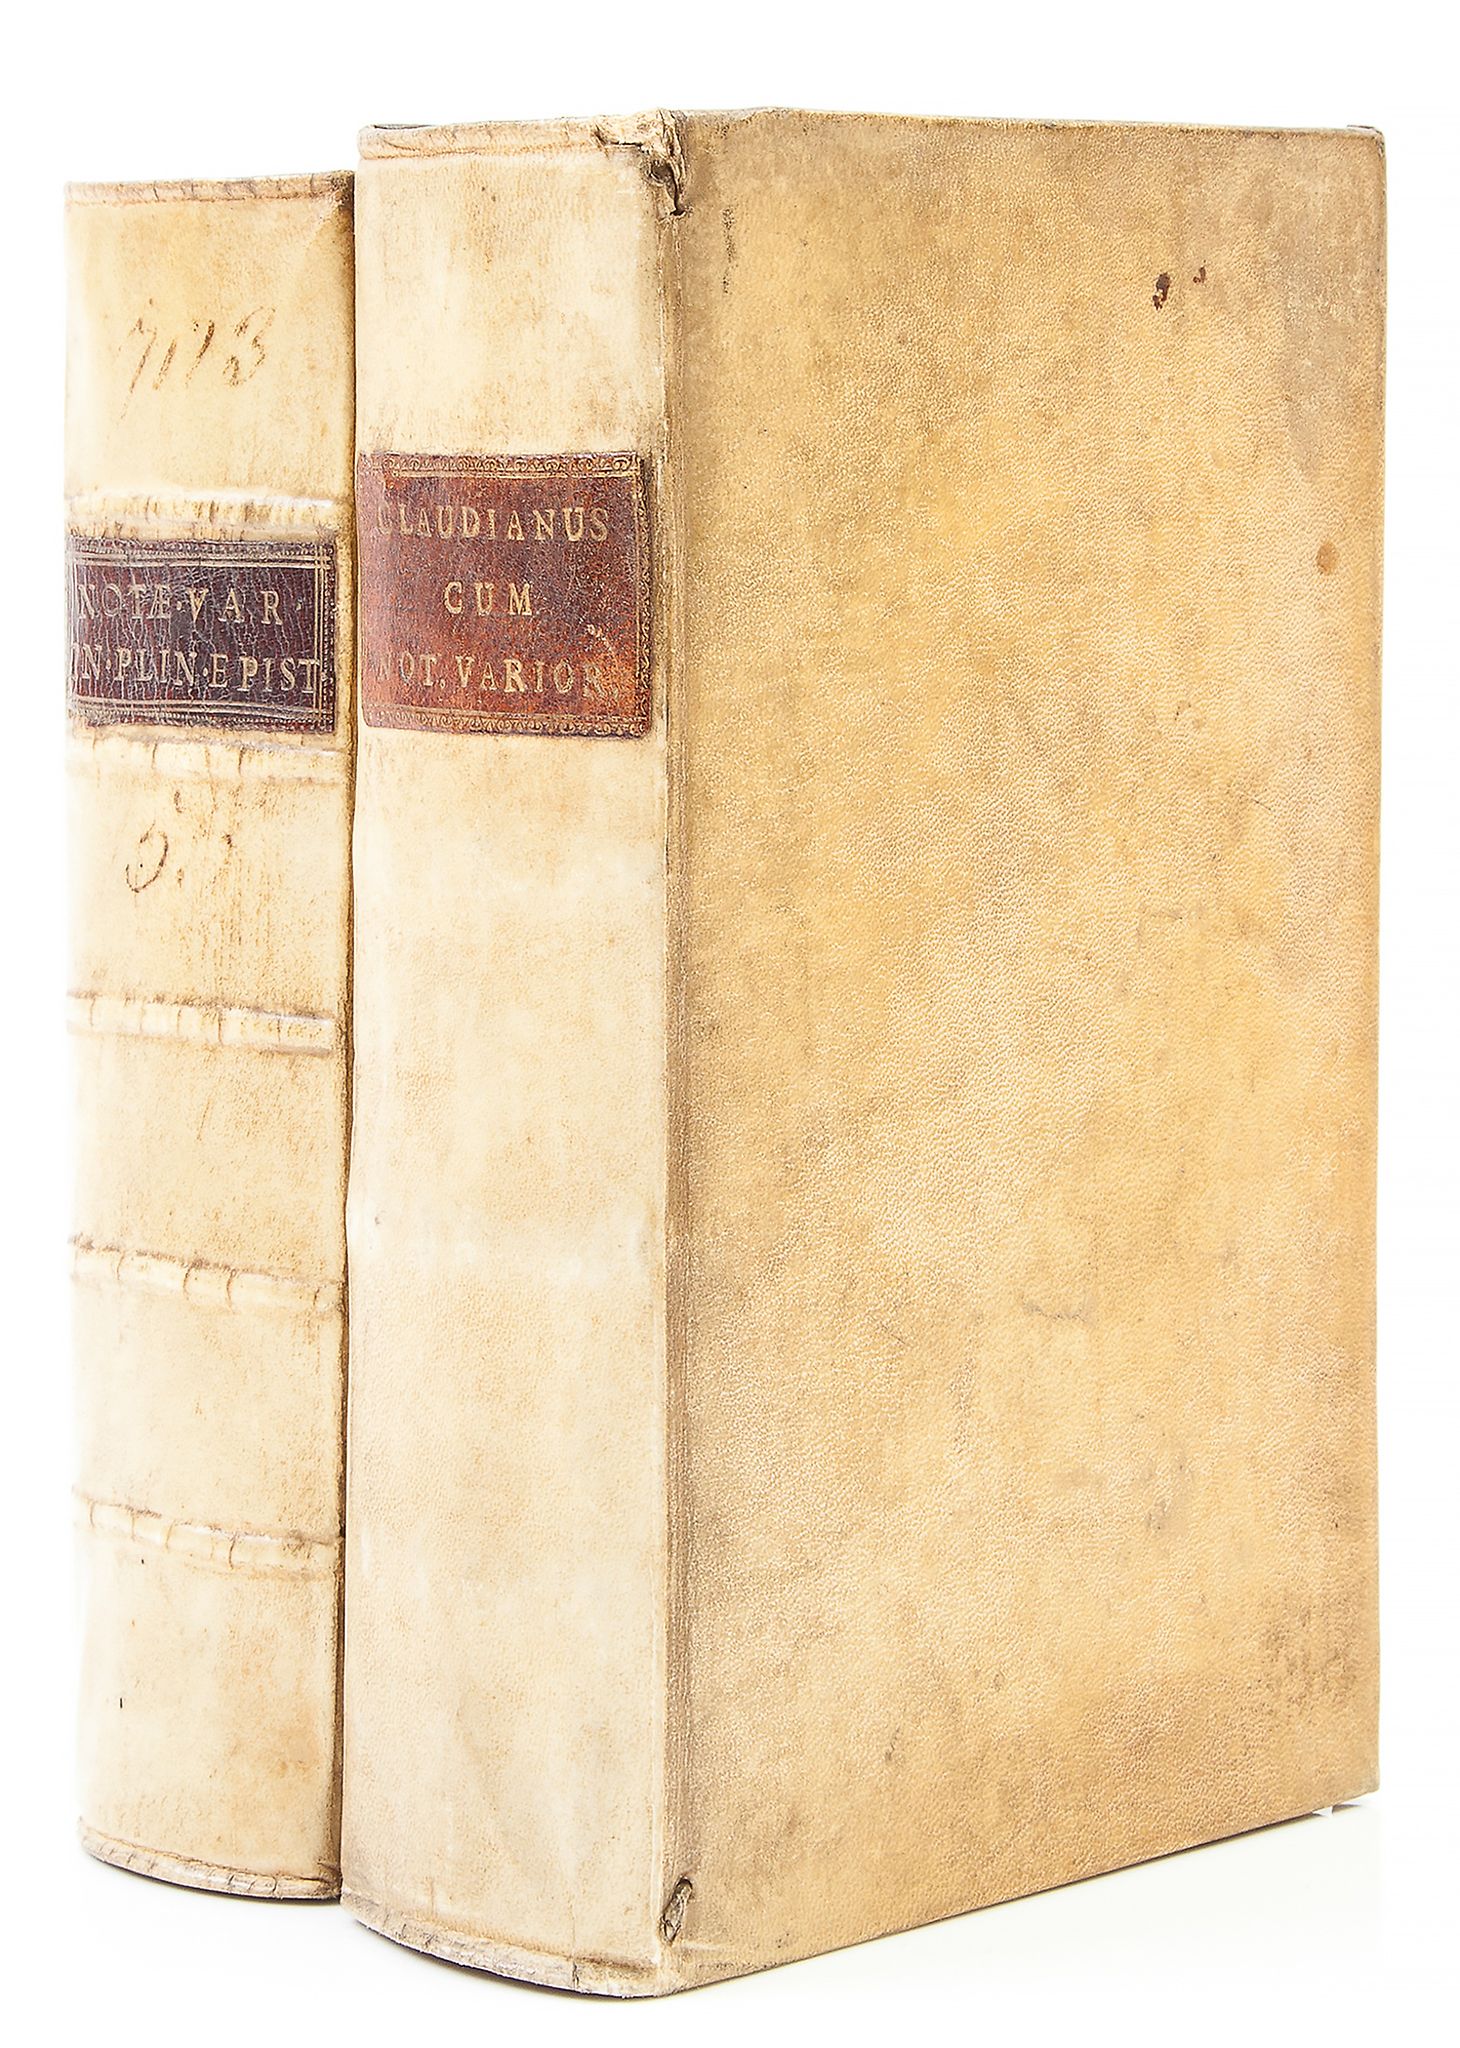 Plinius Secundus (Gaius Caecilius) - Epistolarum Libri X,   additional engraved title, woodcut